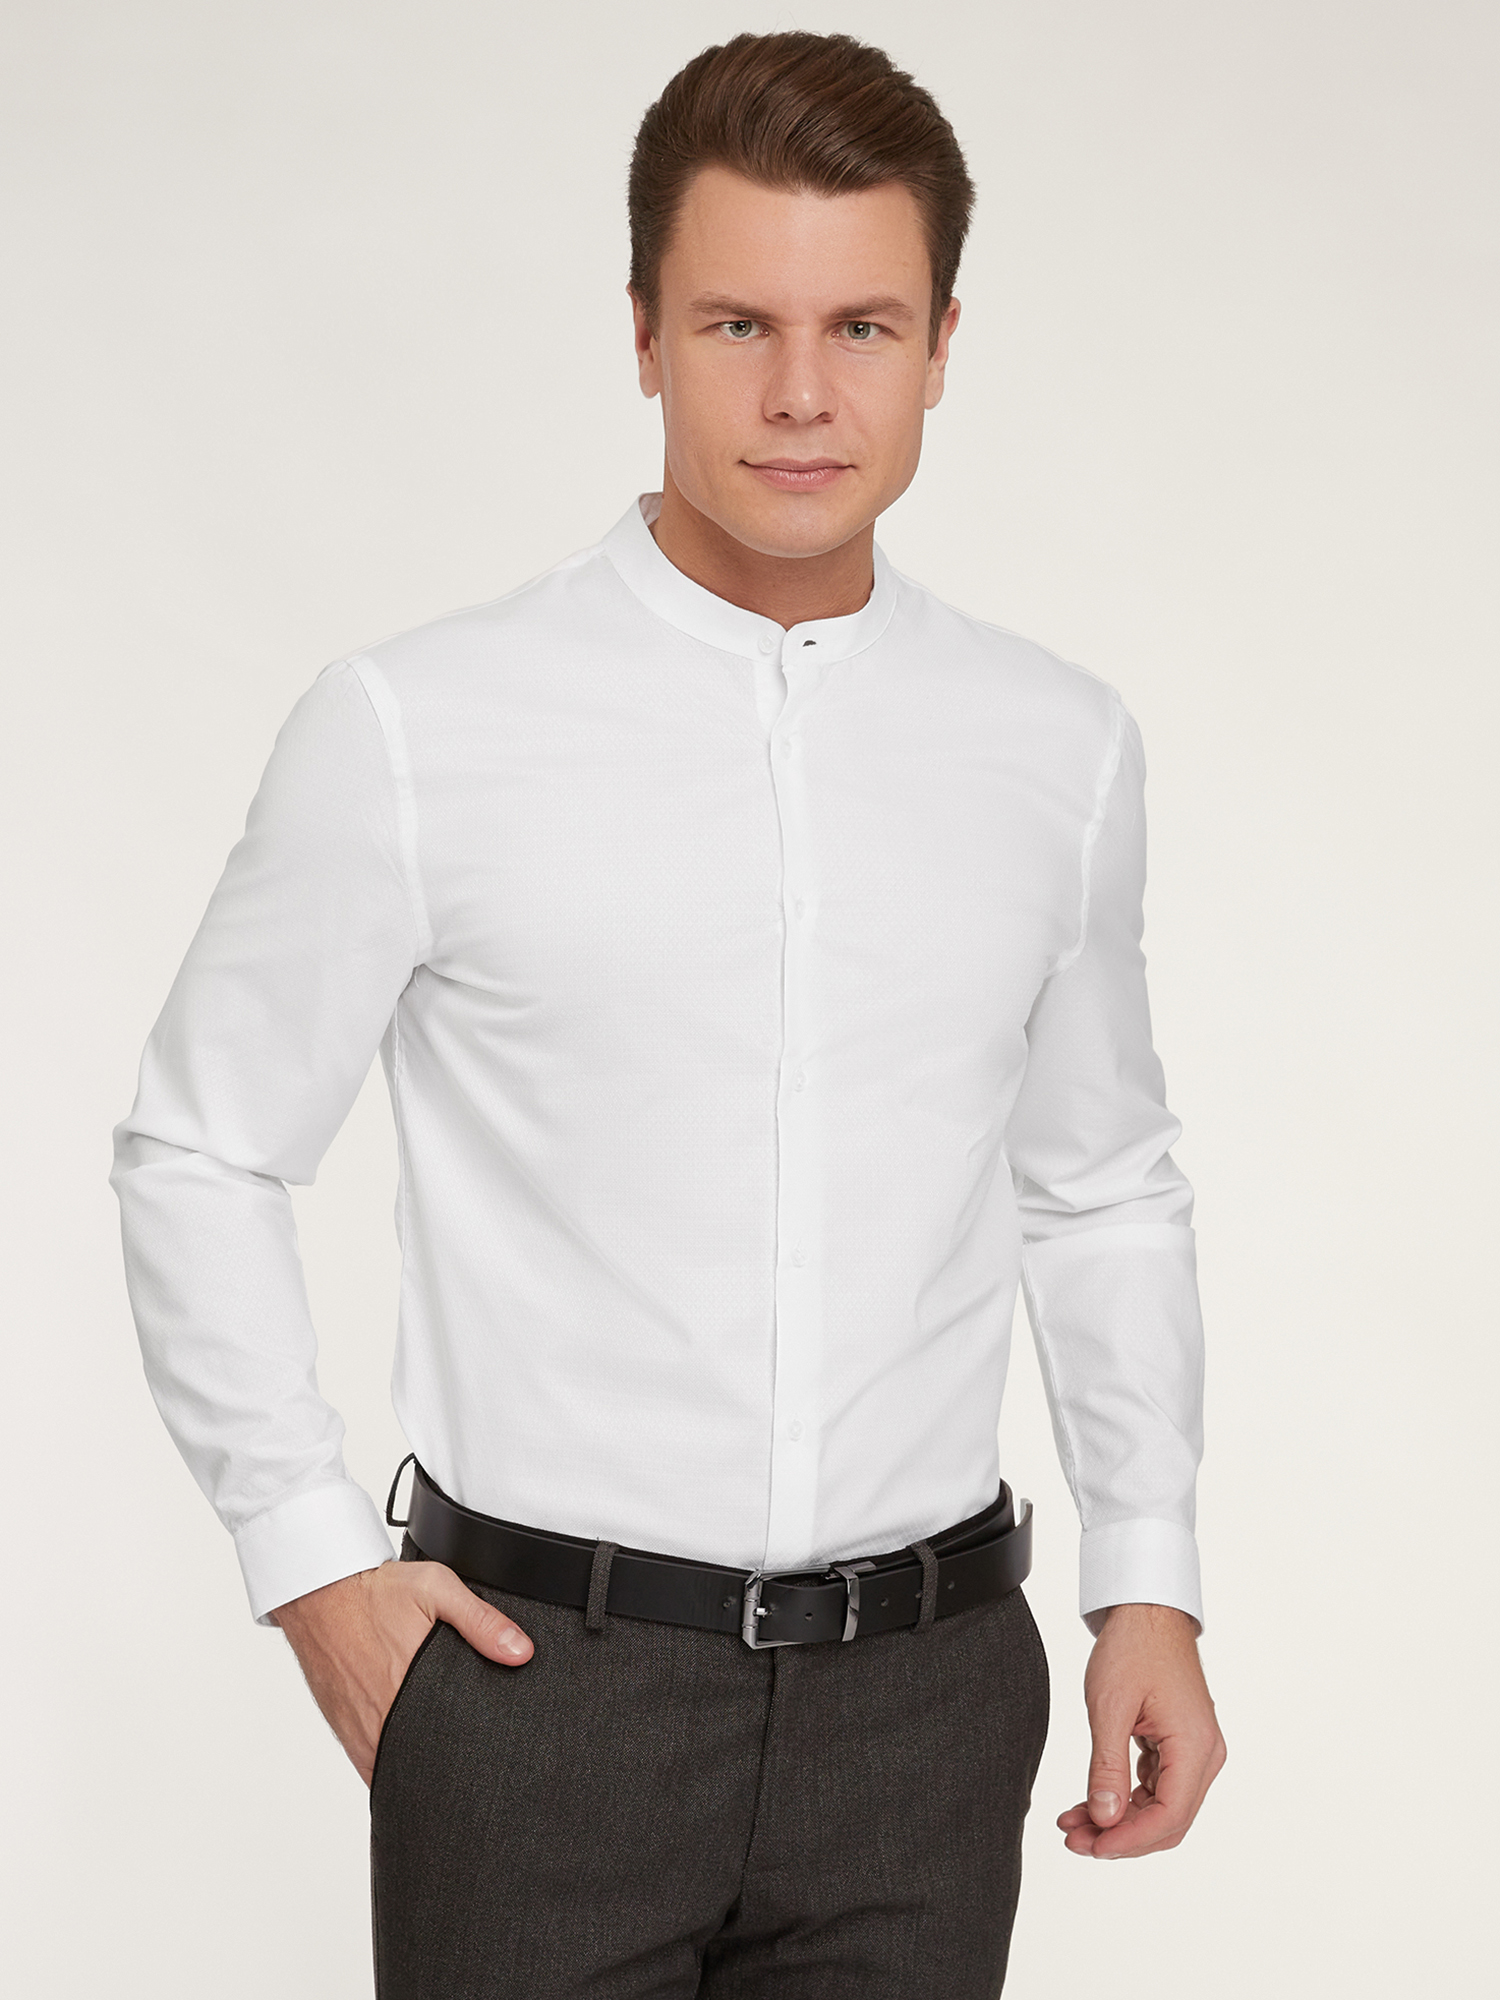 Рубашка мужская oodji 3B140004M-1 белая XS